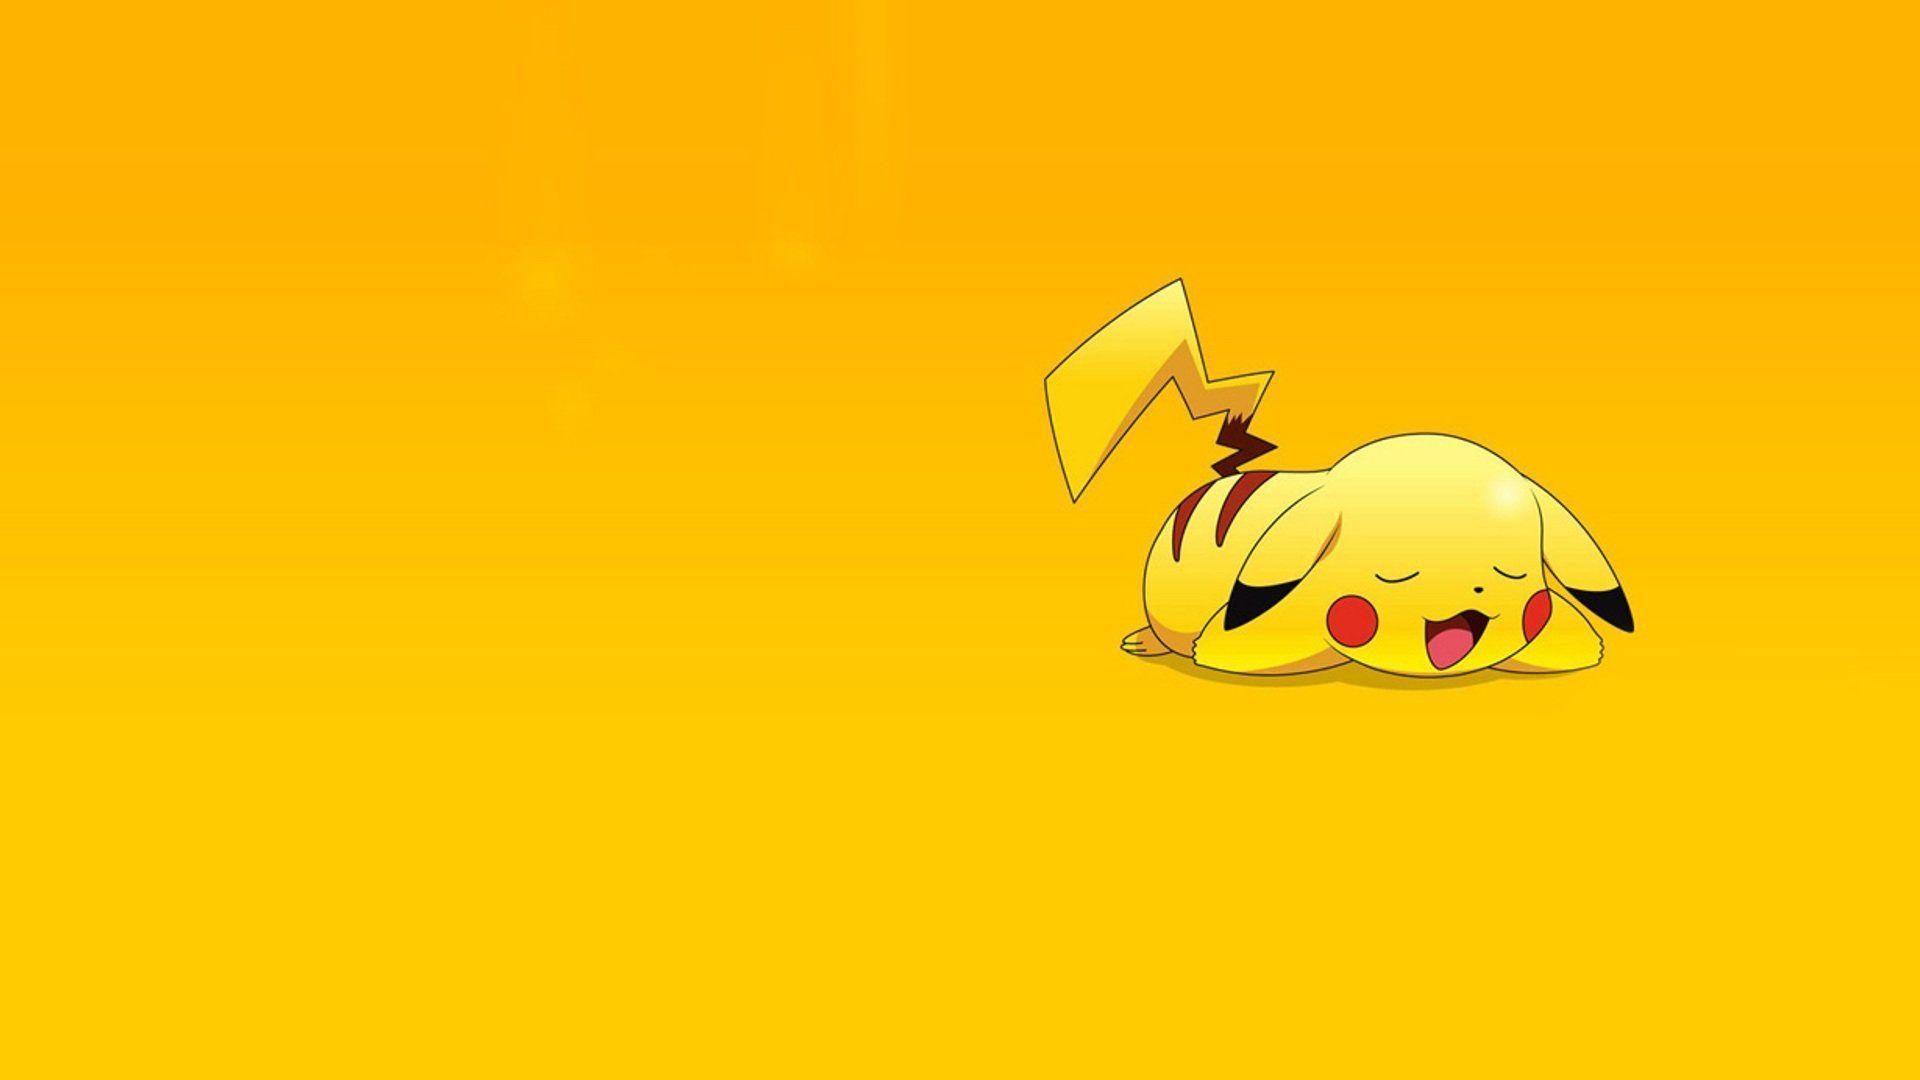 Free Cute Pikachu Wallpaper High Quality Resolution at Movies Monodomo